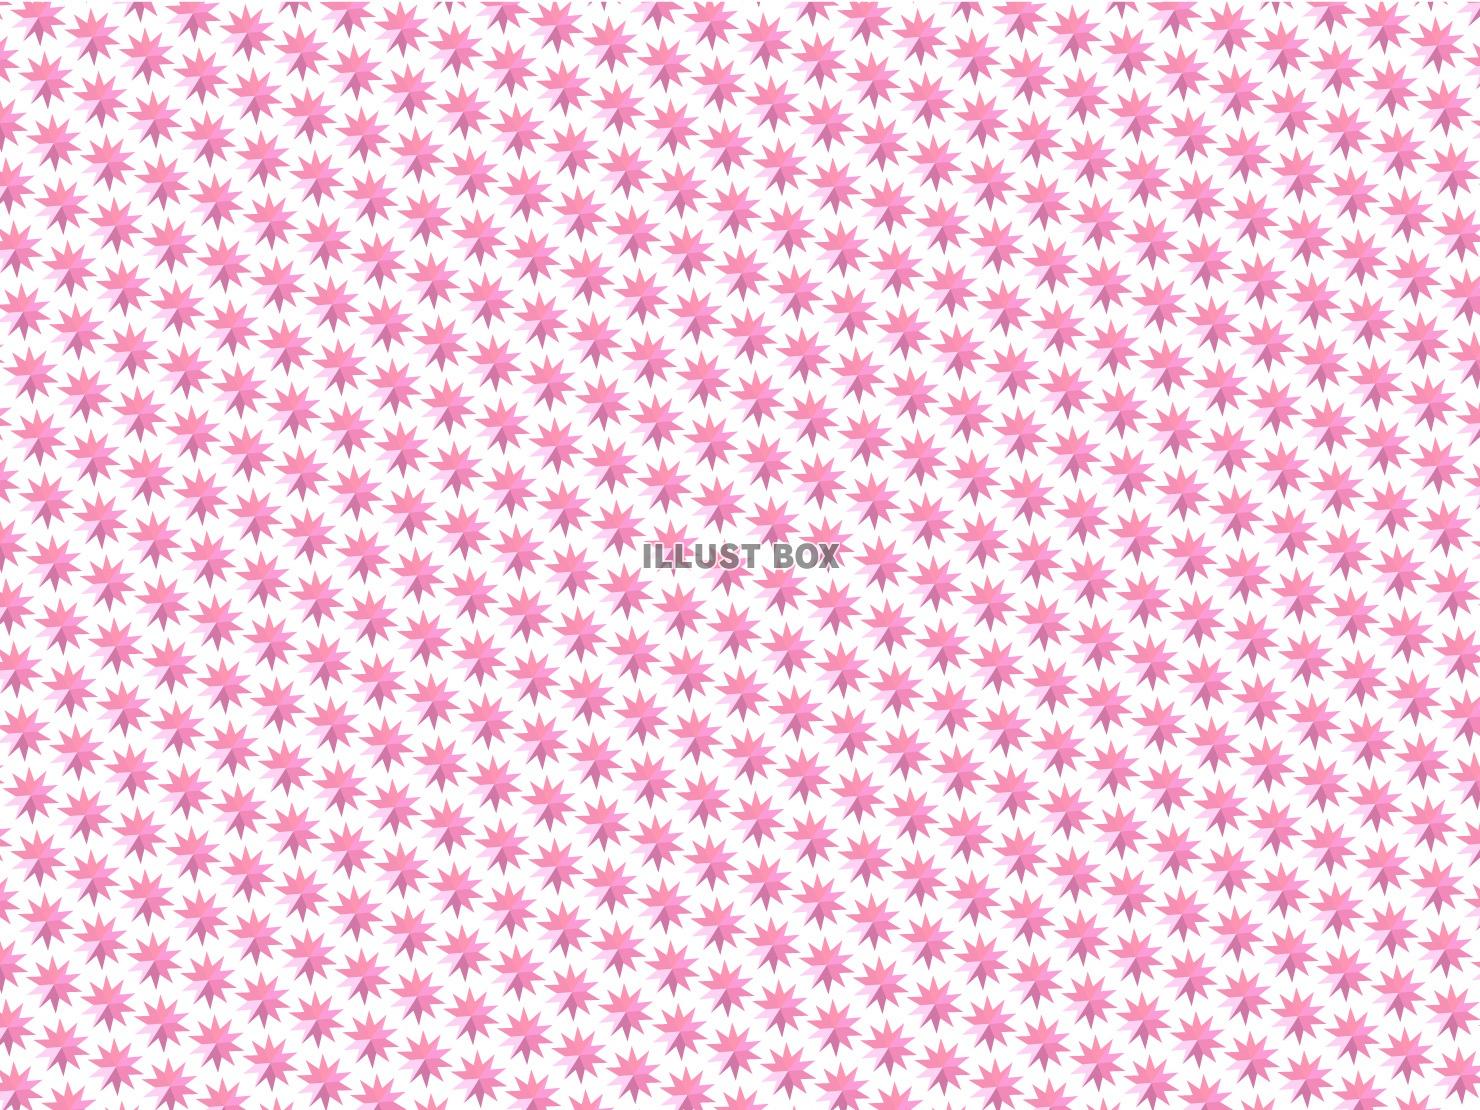 無料イラスト ピンクの小さな星型多角形パターン背景素材